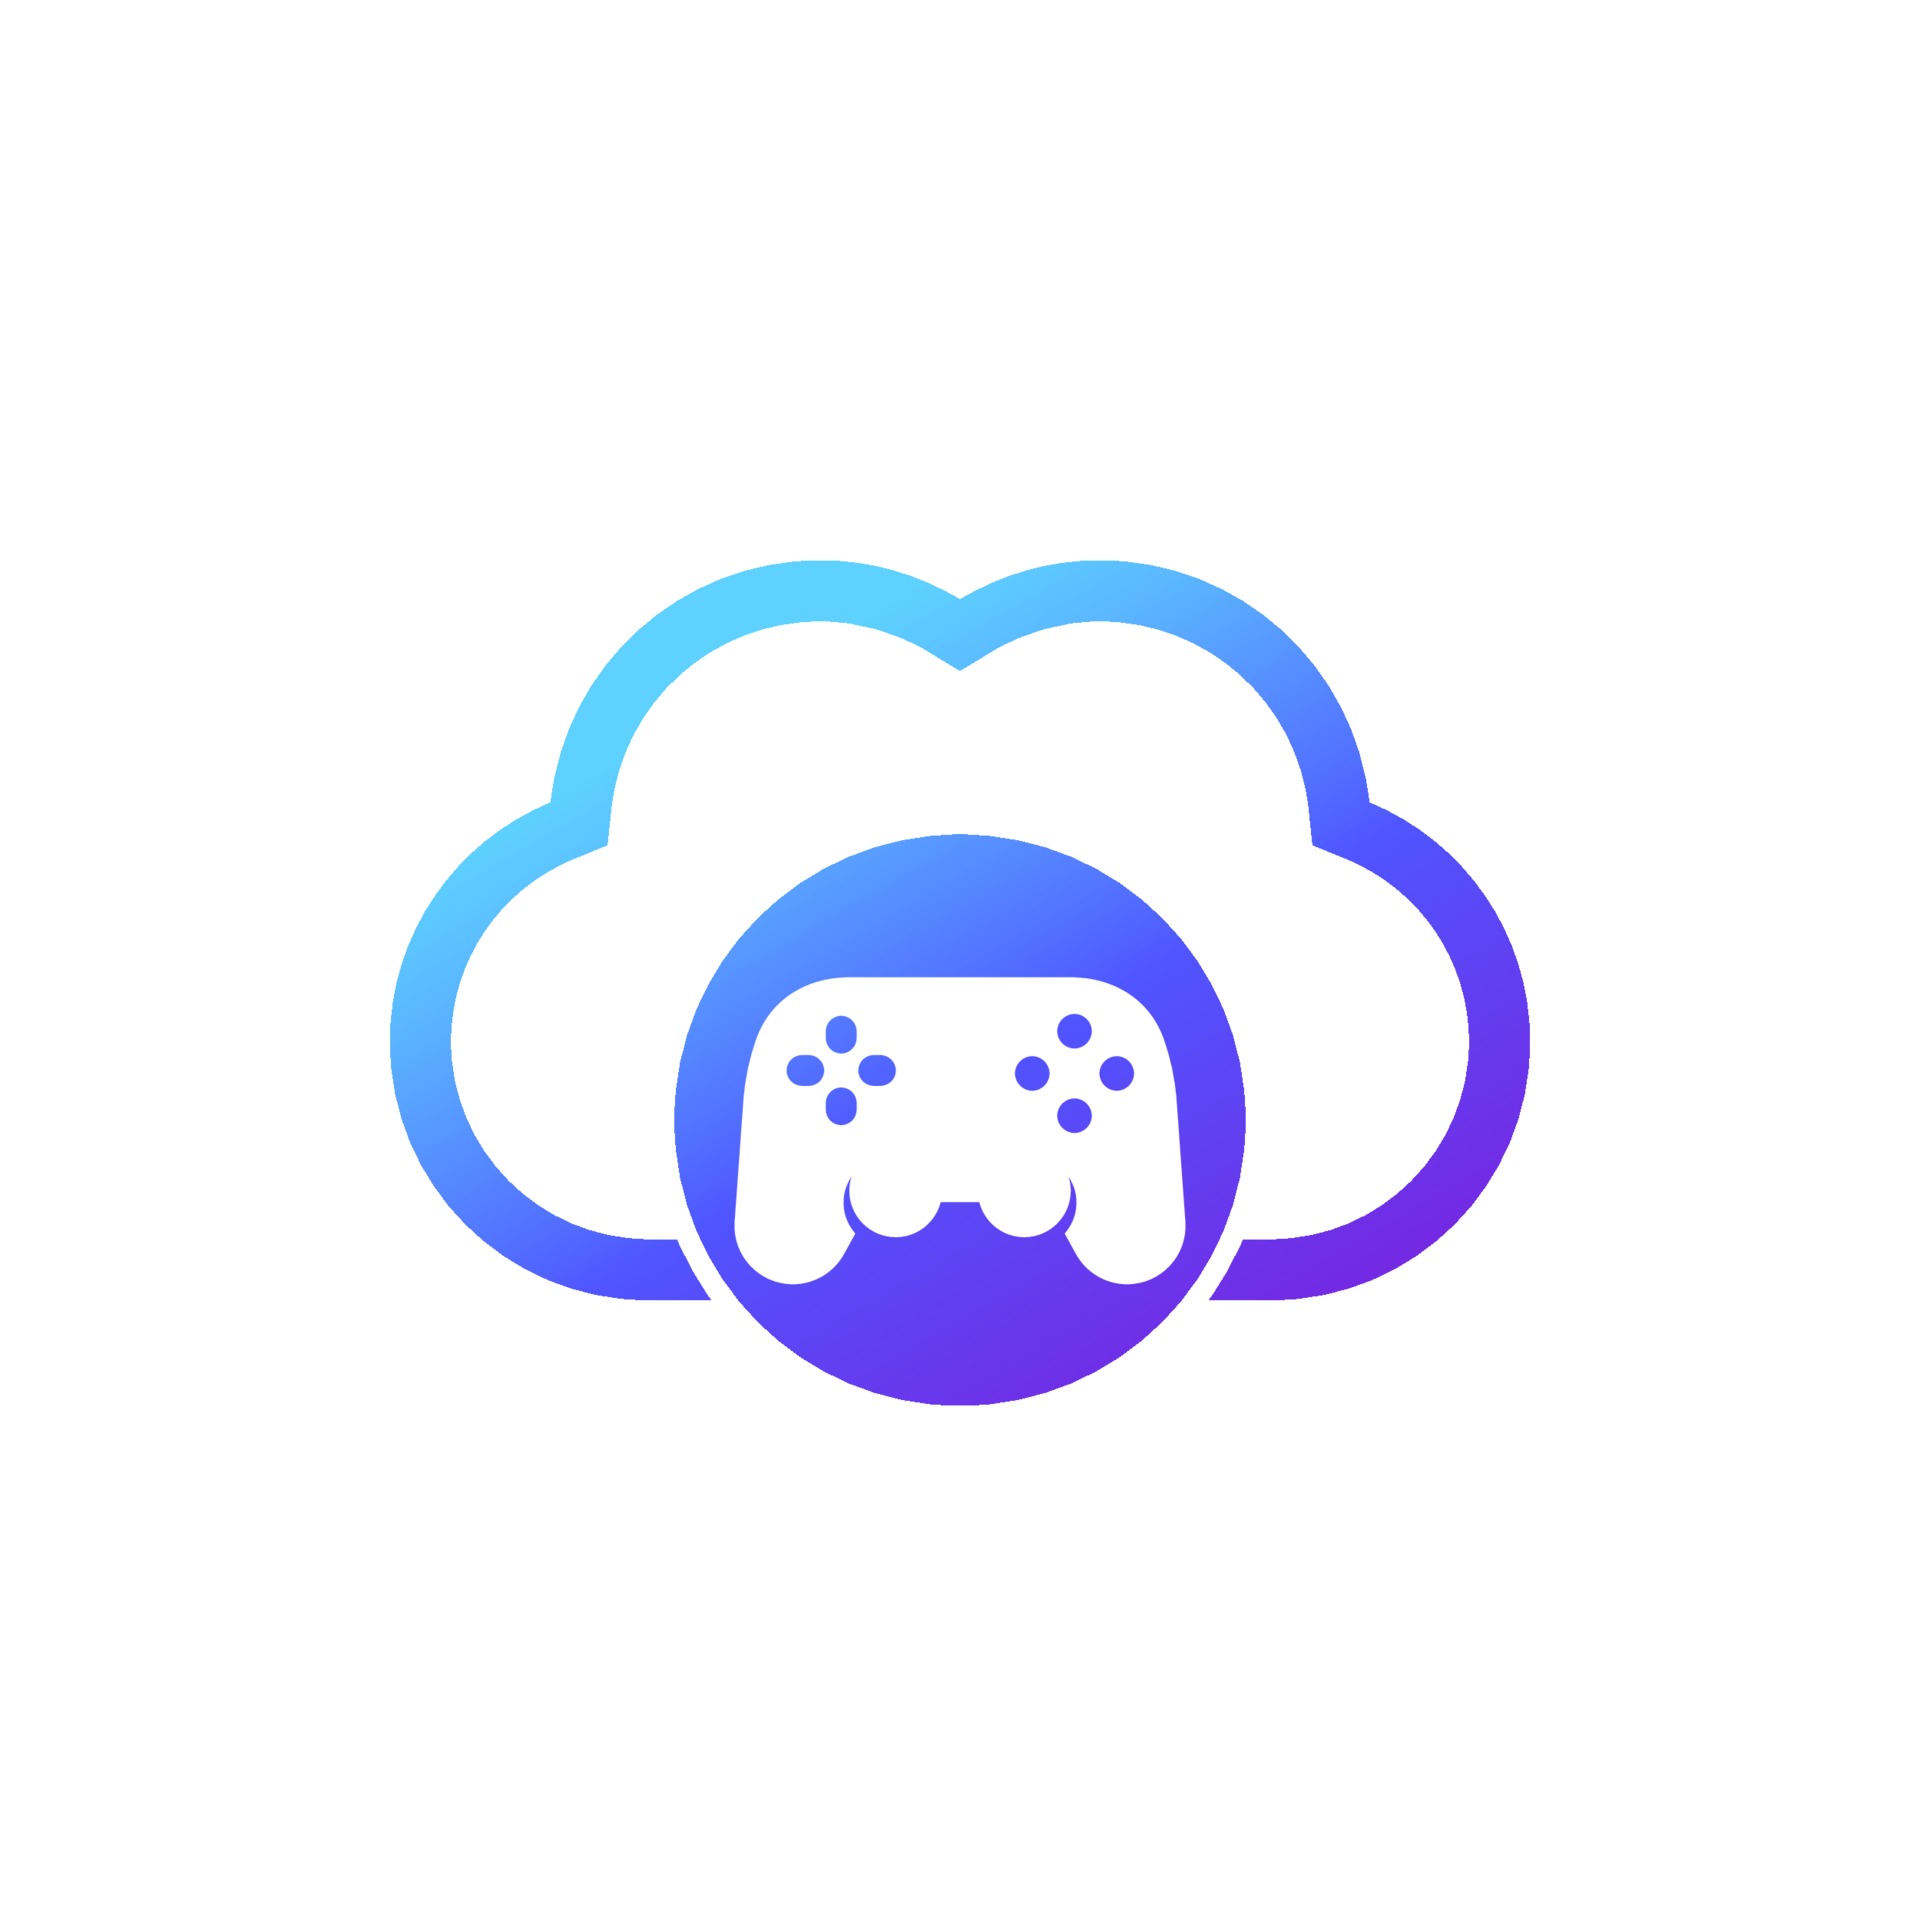 Jogos na nuvem - ícones de jogos grátis